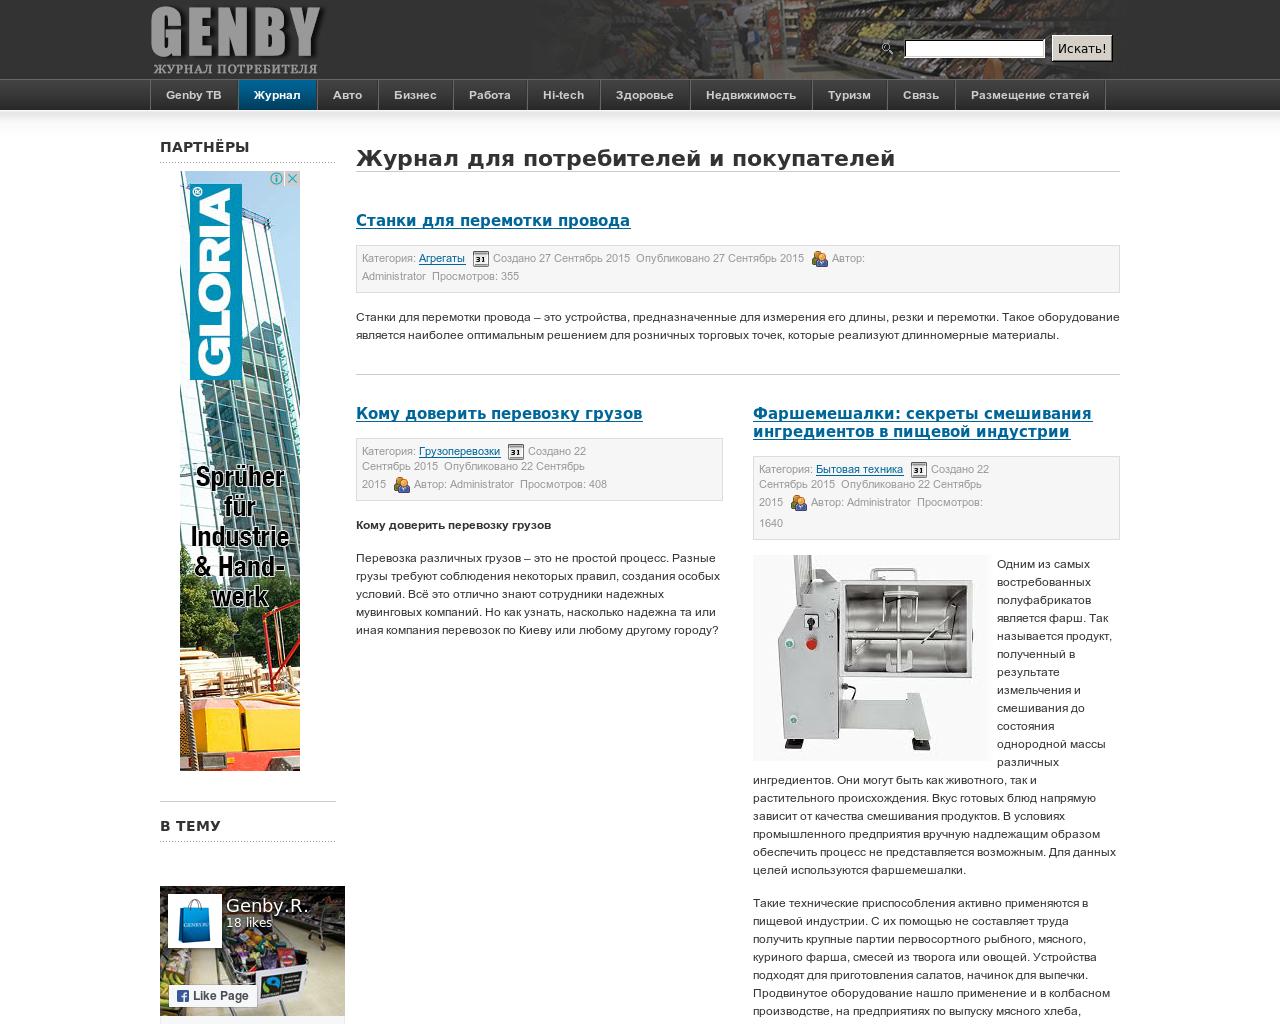 Изображение сайта genby.ru в разрешении 1280x1024